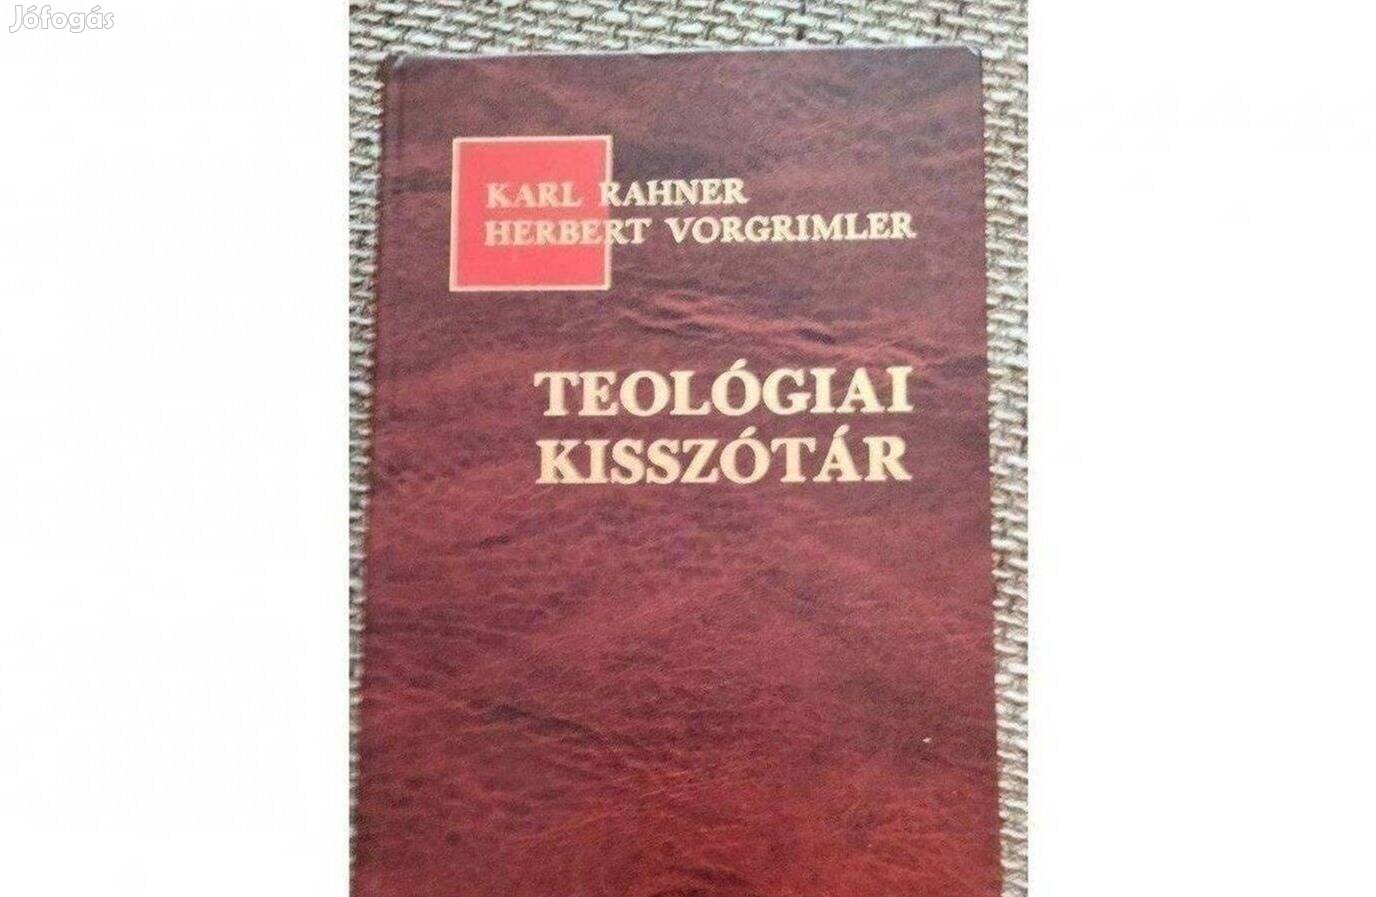 Vorgrimler,Herbert Karl Rahner: Teológiai kisszótár